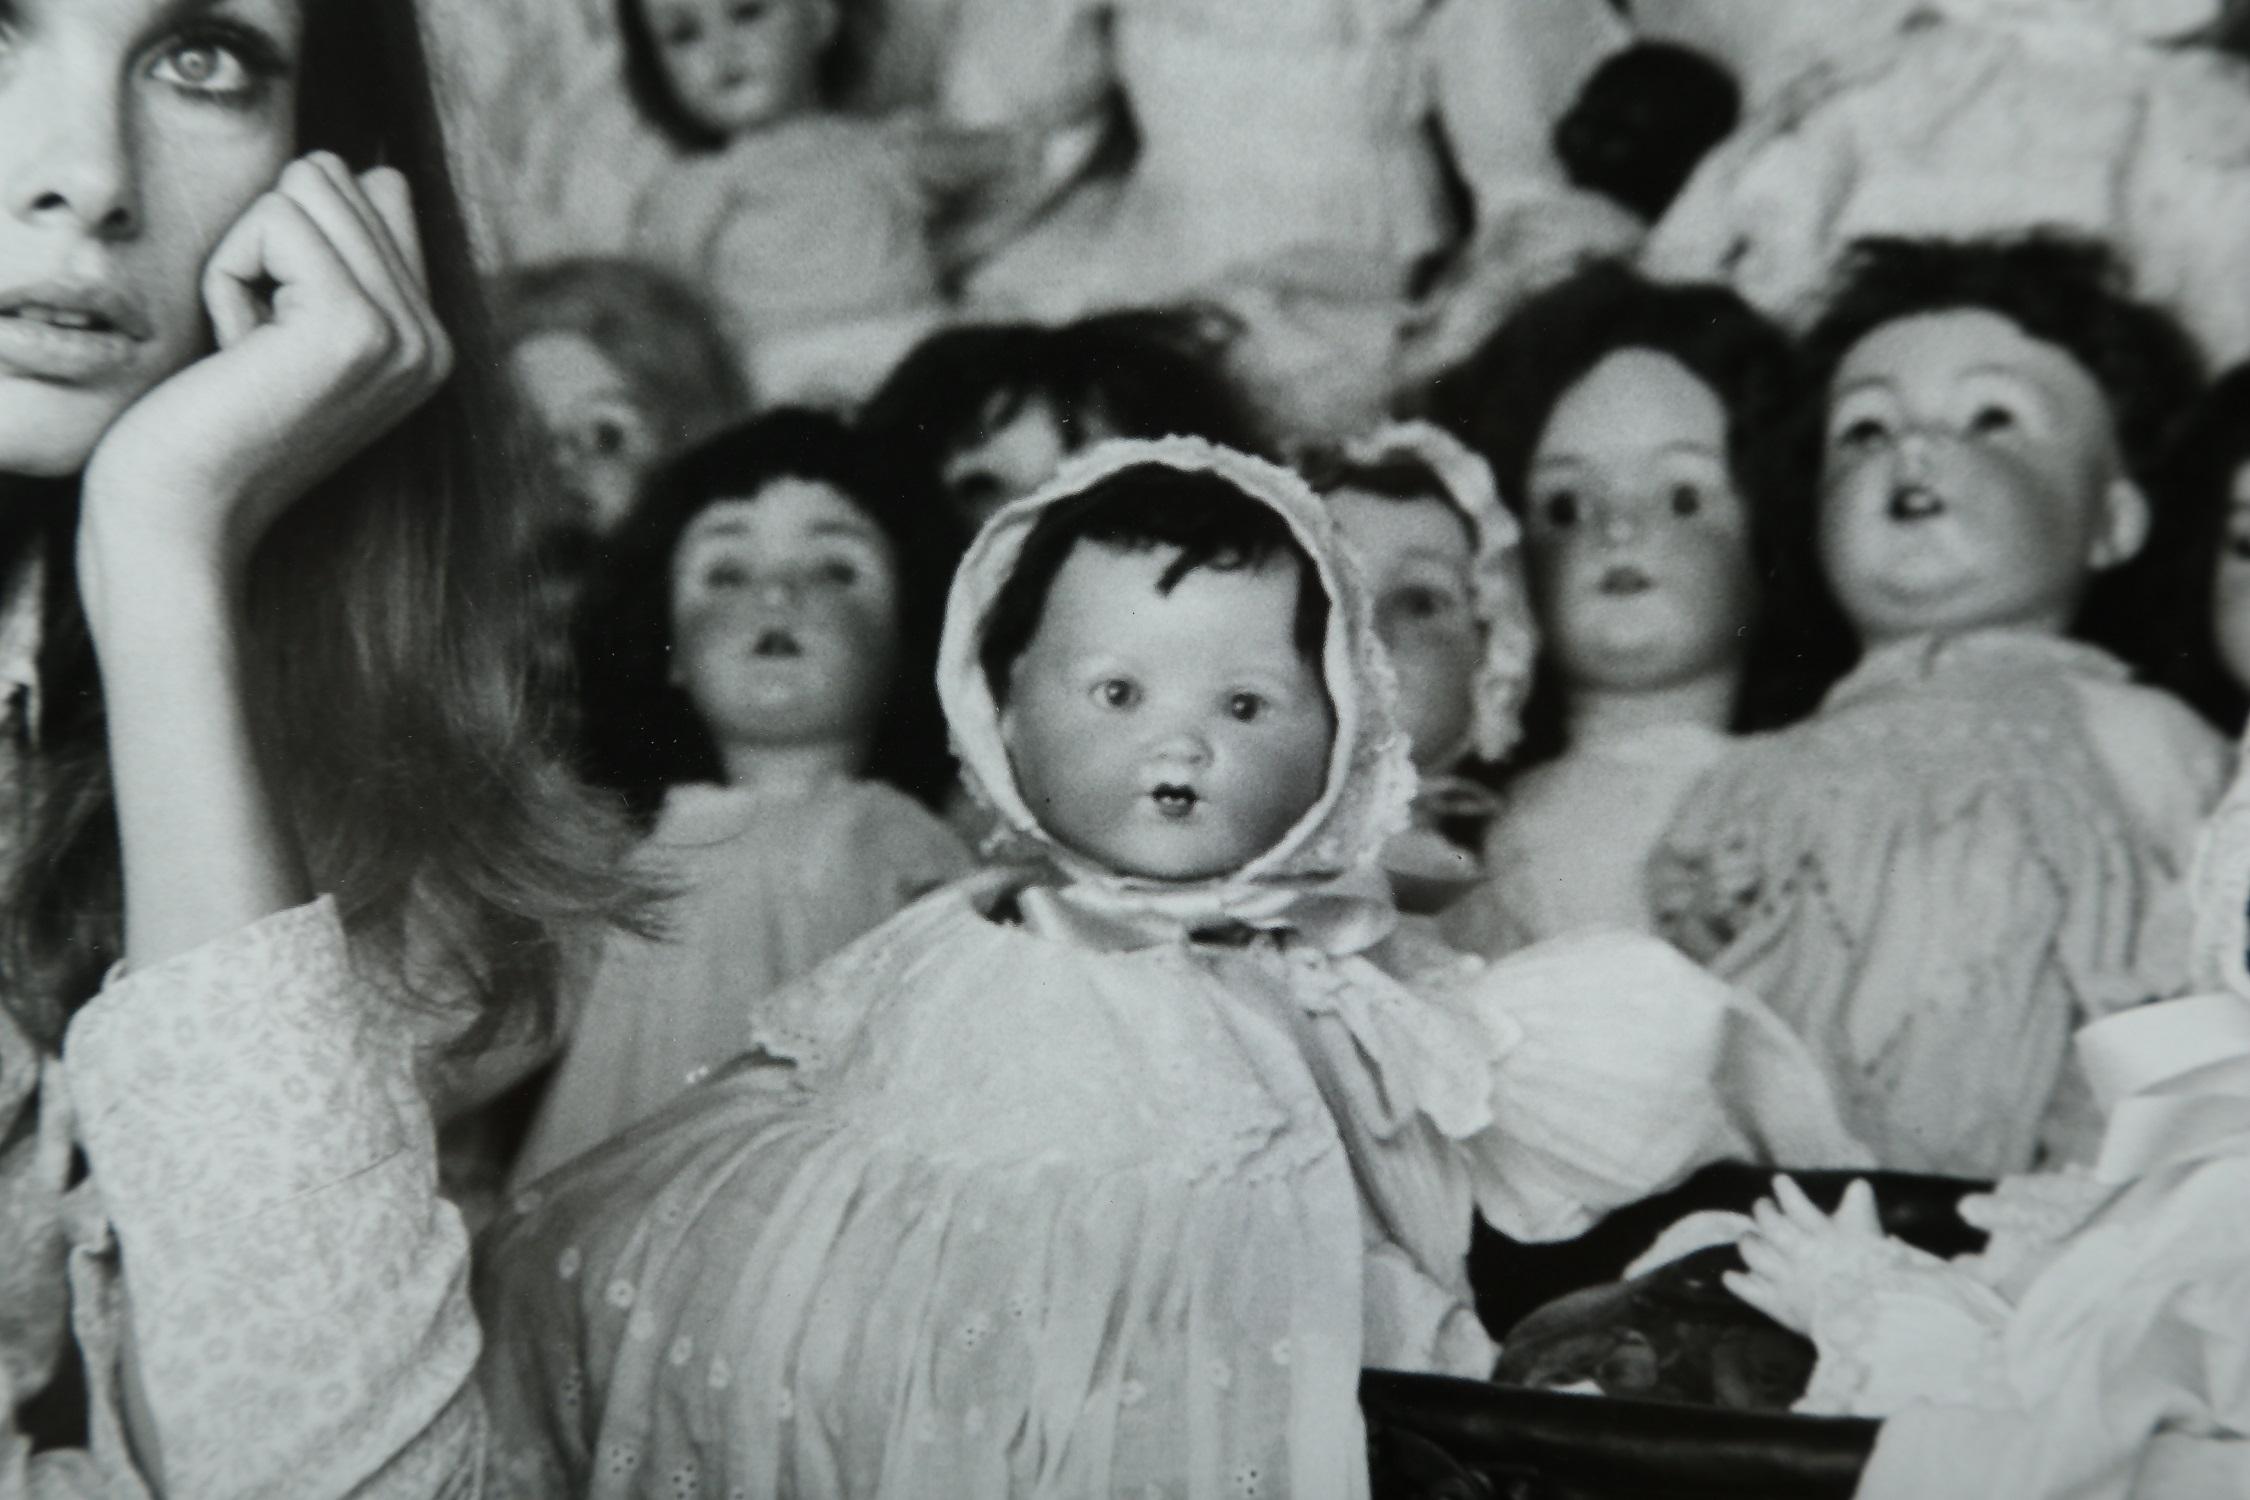 Terry O' Neill Fotografie von Jean Shrimpton in Schwarz-Weiß:: 1964 (Mitte des 20. Jahrhunderts)